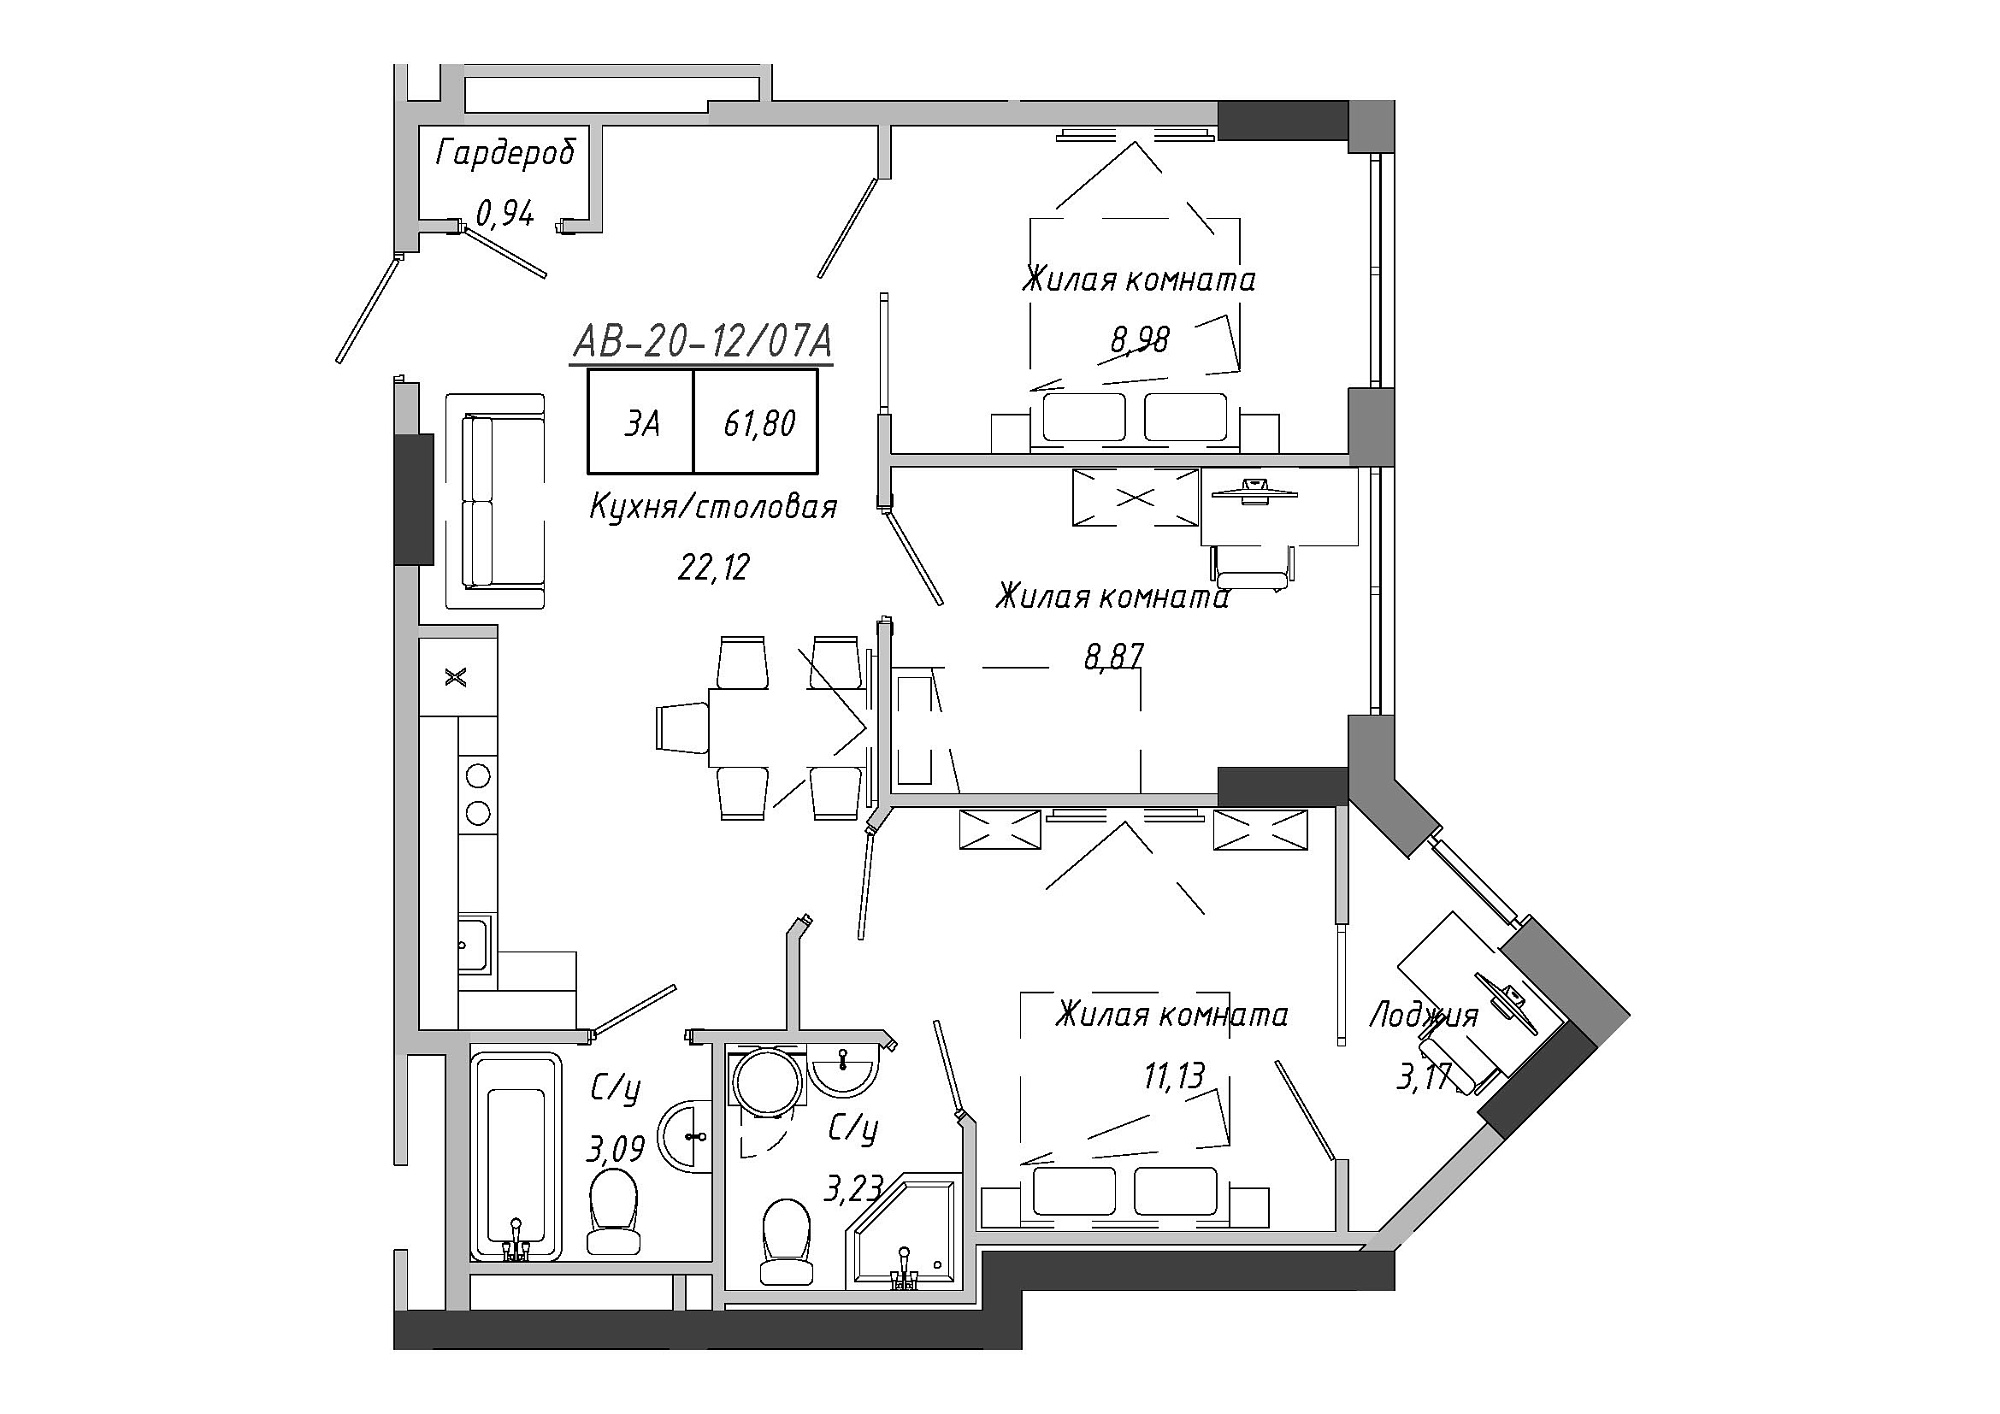 Планування 3-к квартира площею 62.67м2, AB-20-12/0007а.